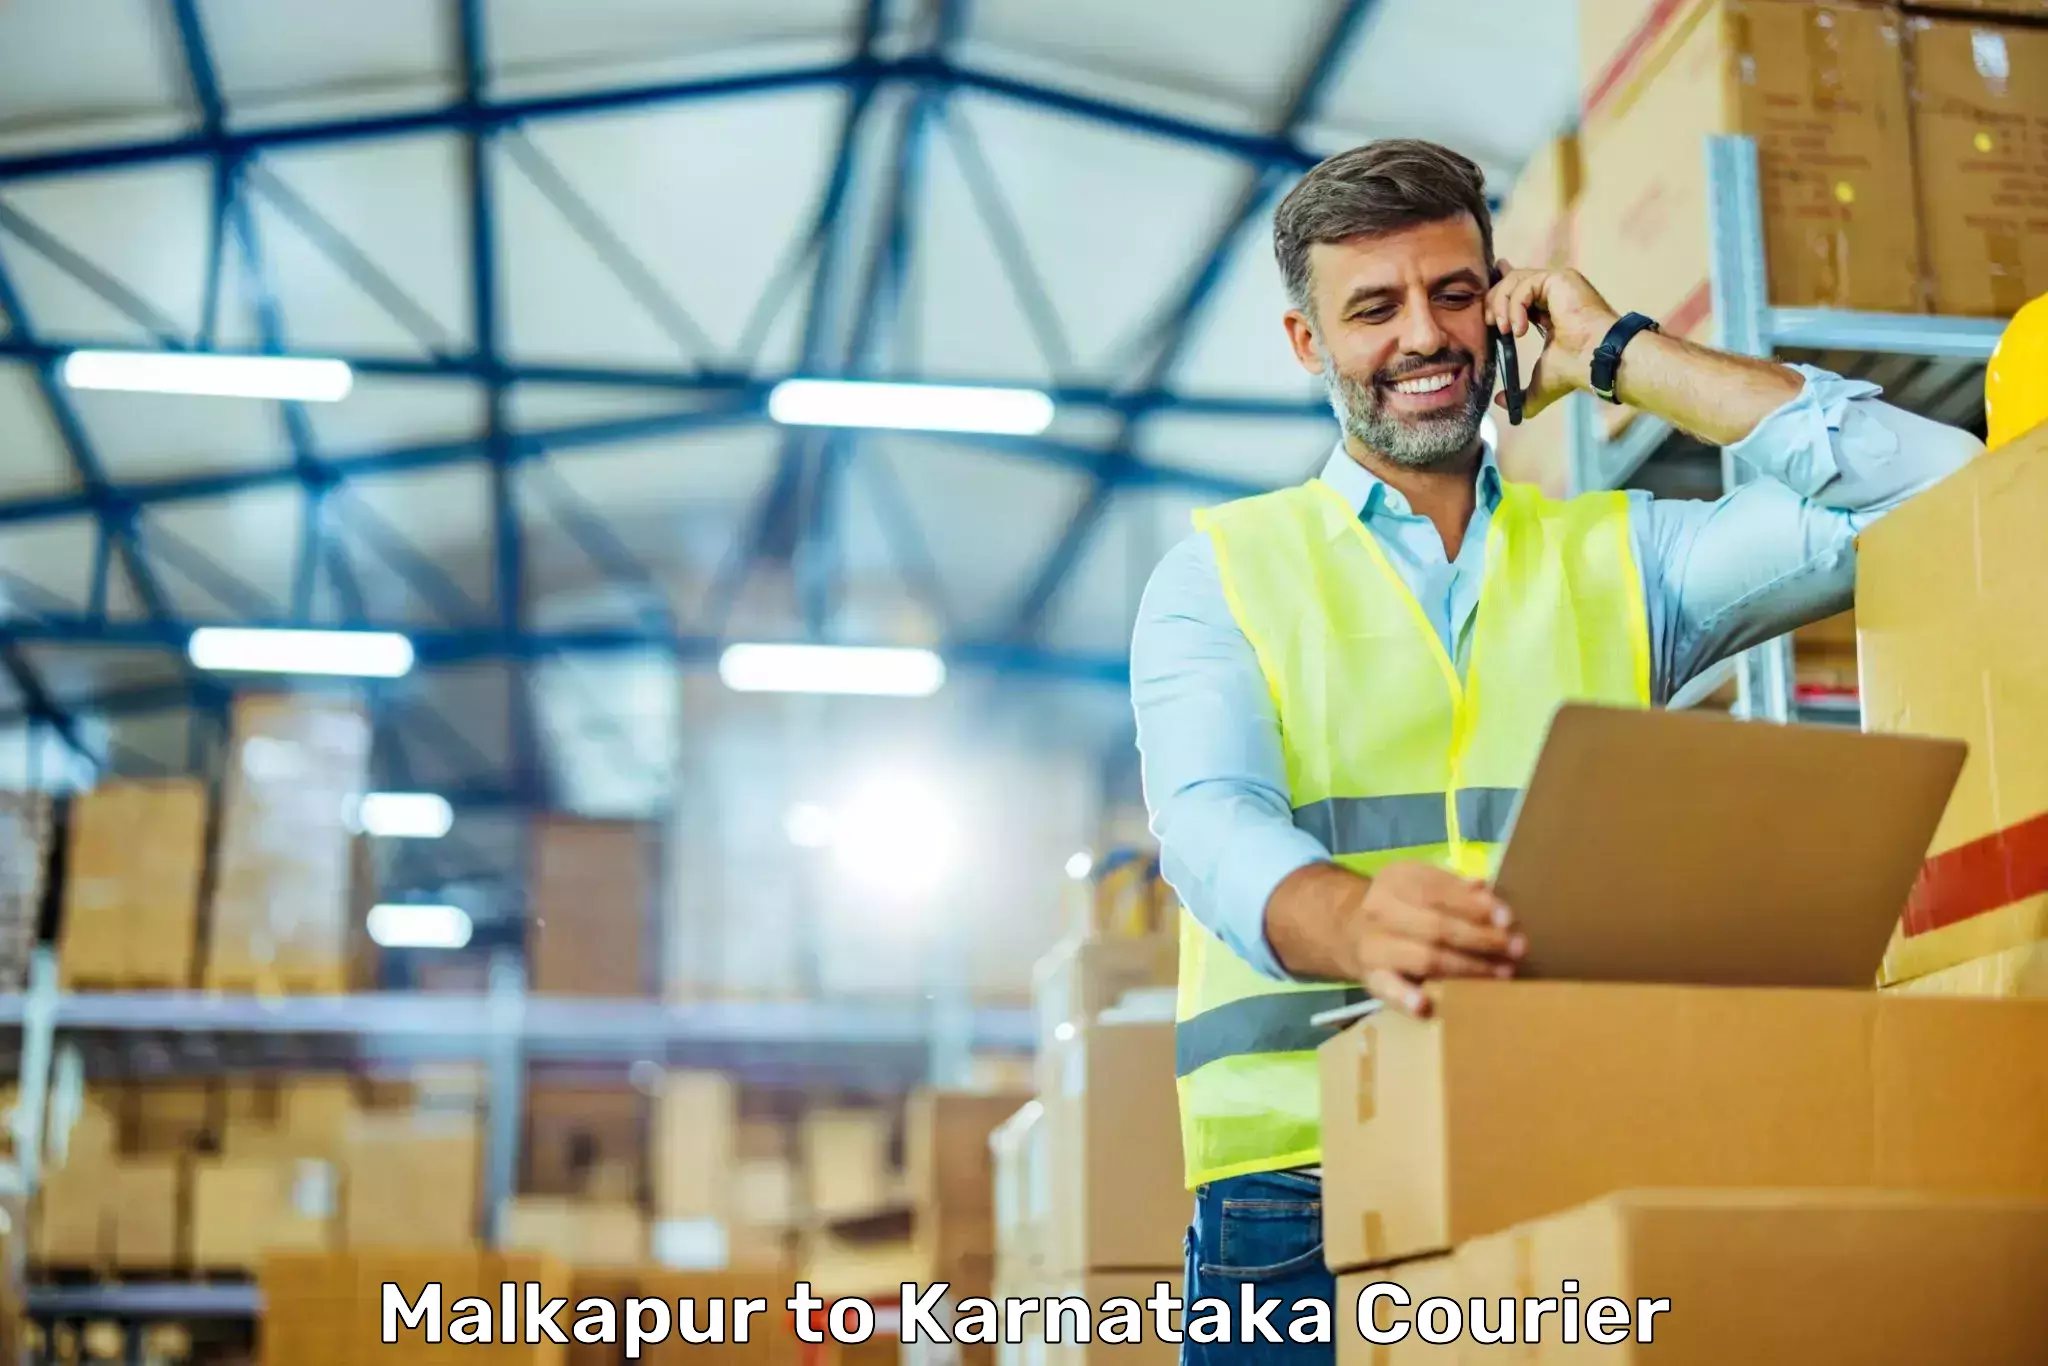 Efficient cargo services in Malkapur to Karnataka